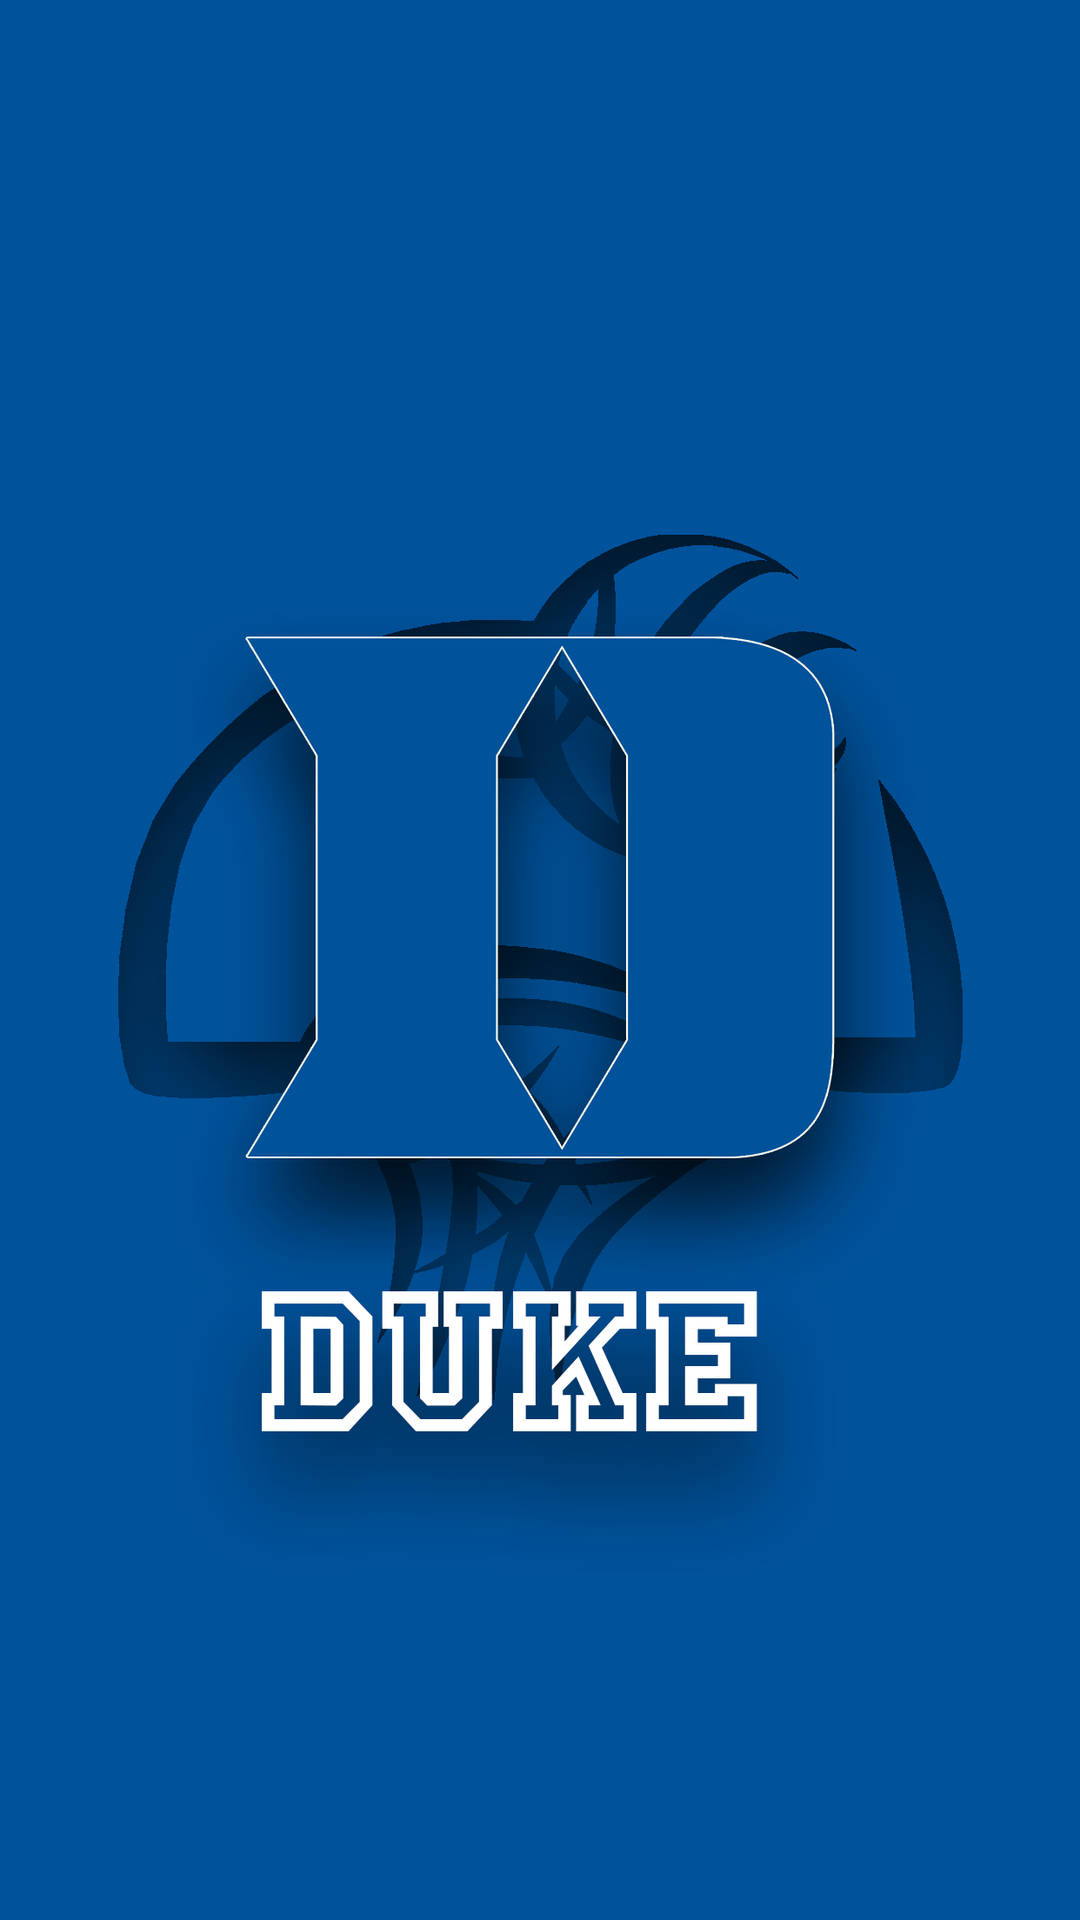 Duke Blue Devils Embossed Initial Logo Background